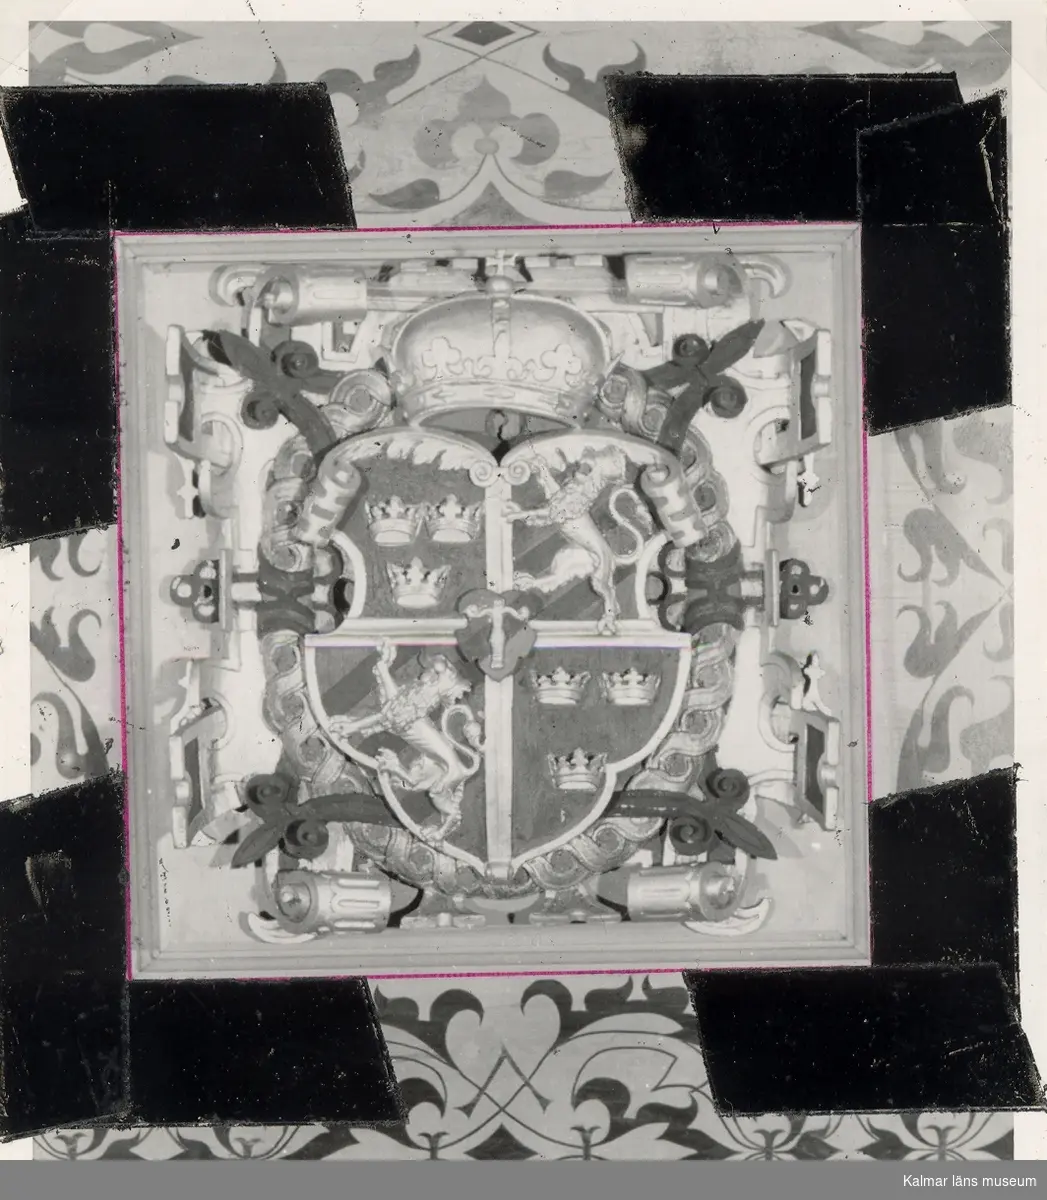 Detalj av kassettaket i Kungsmaket på Kalmar slott.
På vissa plåtar har Martin Olsson klistrat eltejp för att markera hur bilden skulle beskäras i boken.